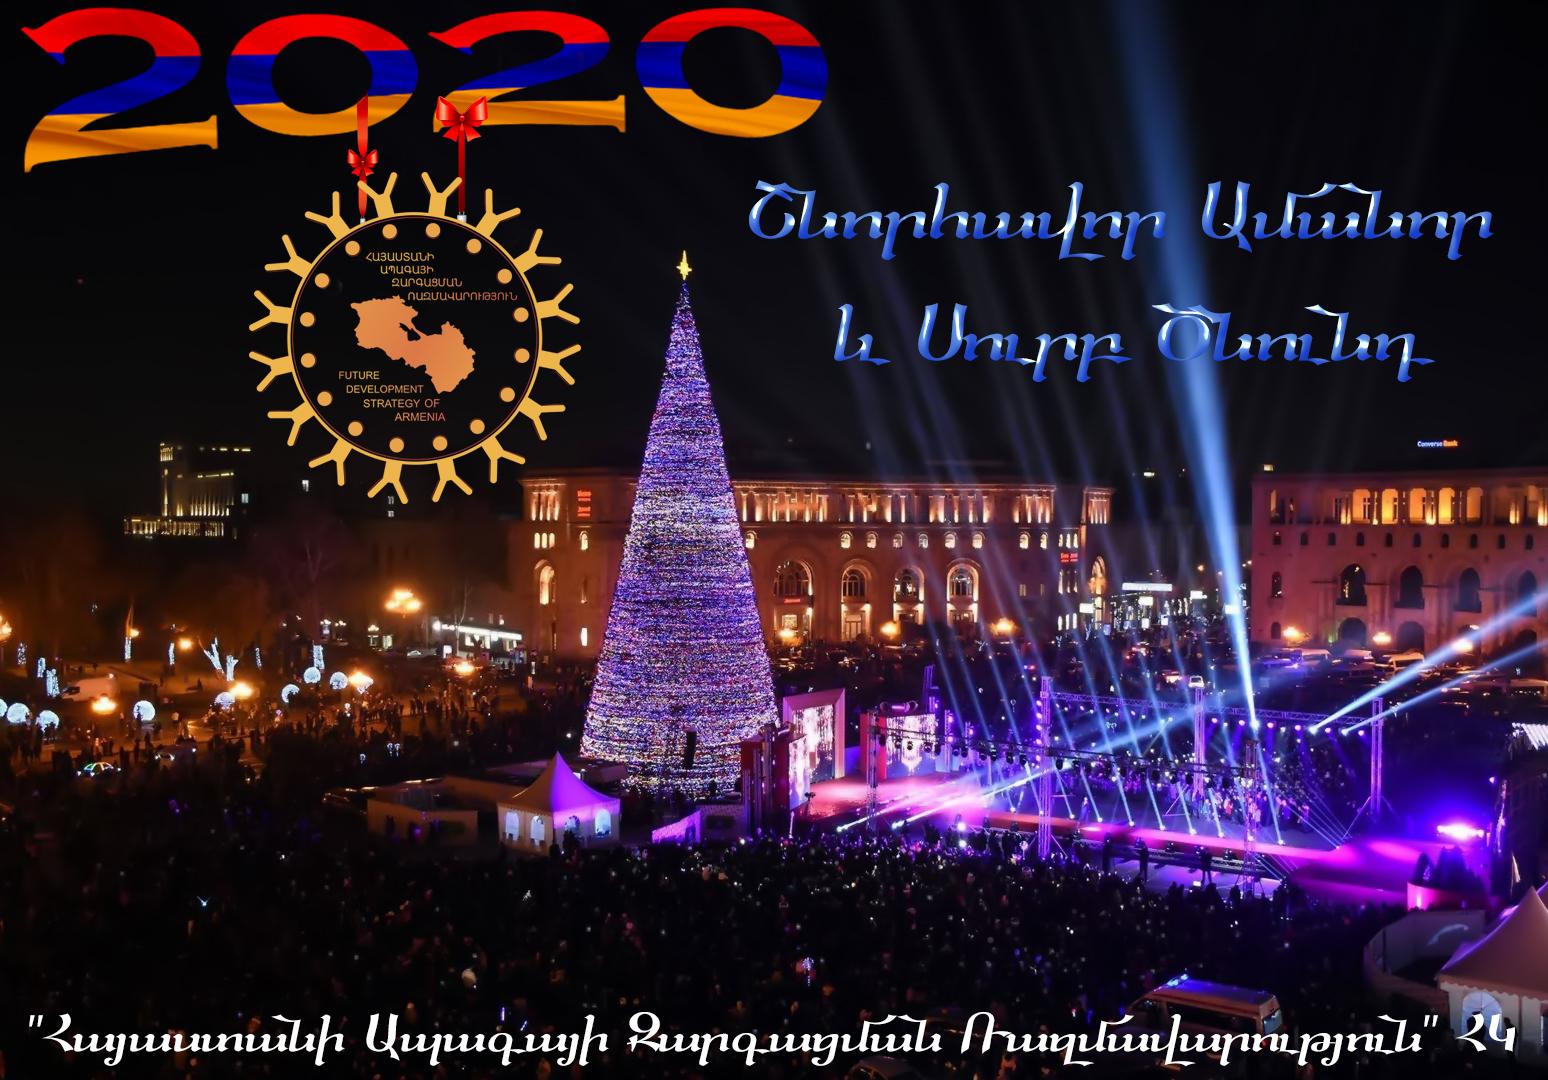 Հայաստանի Ապագայի Զարգացման Ռազմավարություն ՀԿ-ը խորհուրդը, շնորհավորական ուղերձ է հղել Ամանորի և Սուրբ Ծննդյան տոների կապակցությամբ